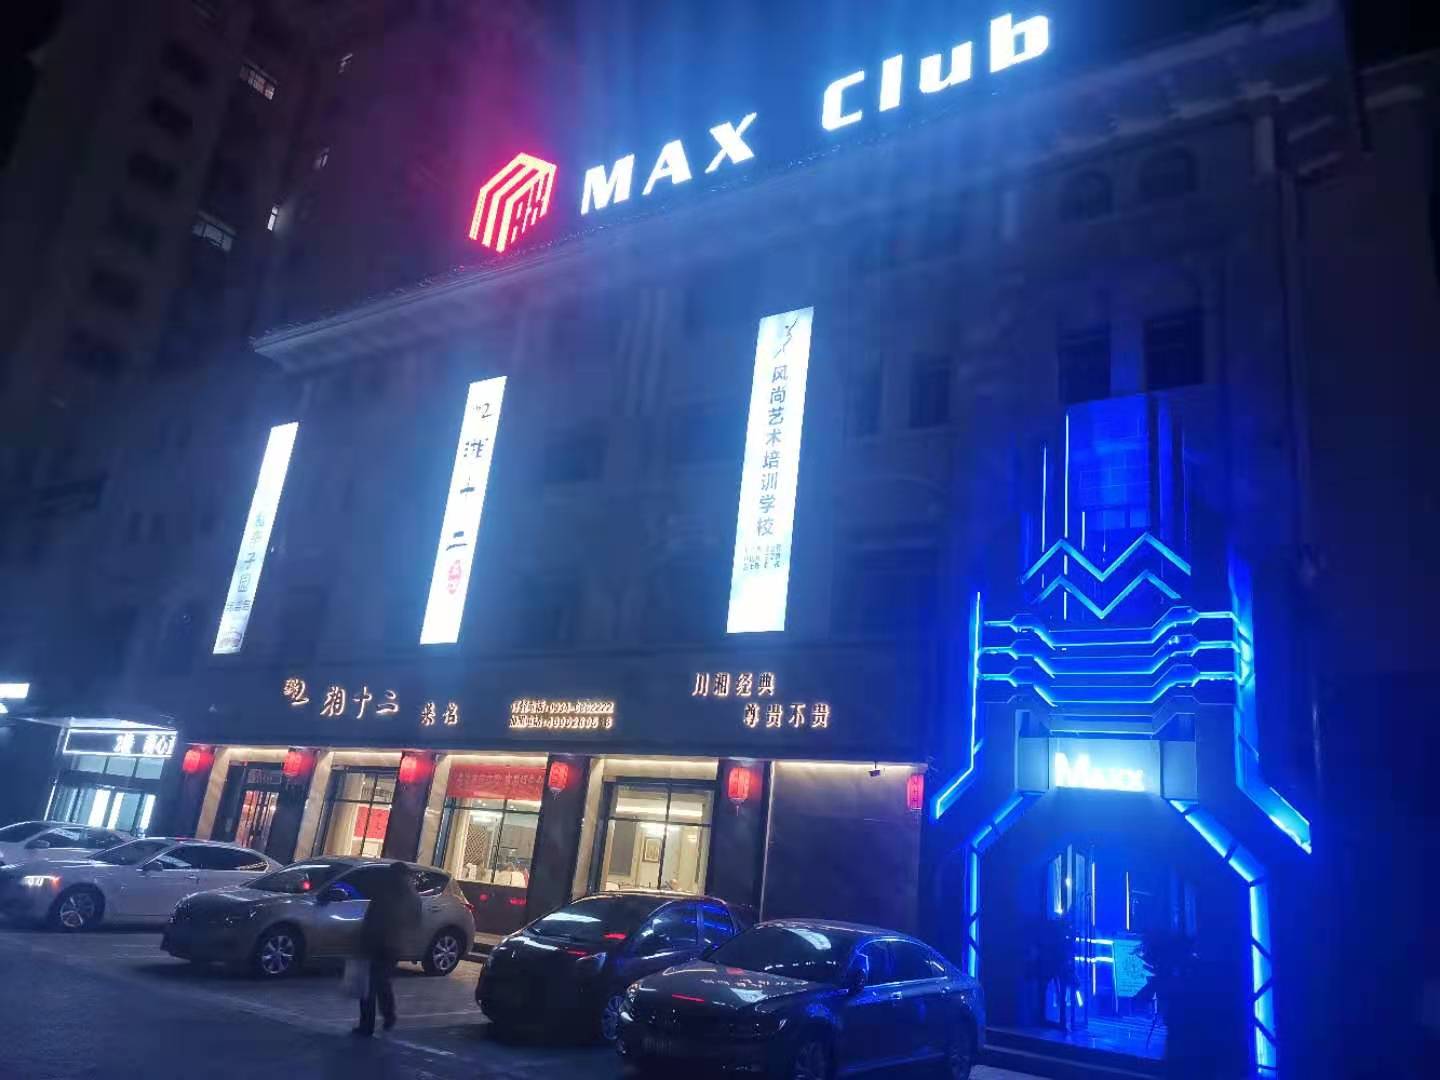 MAX Club